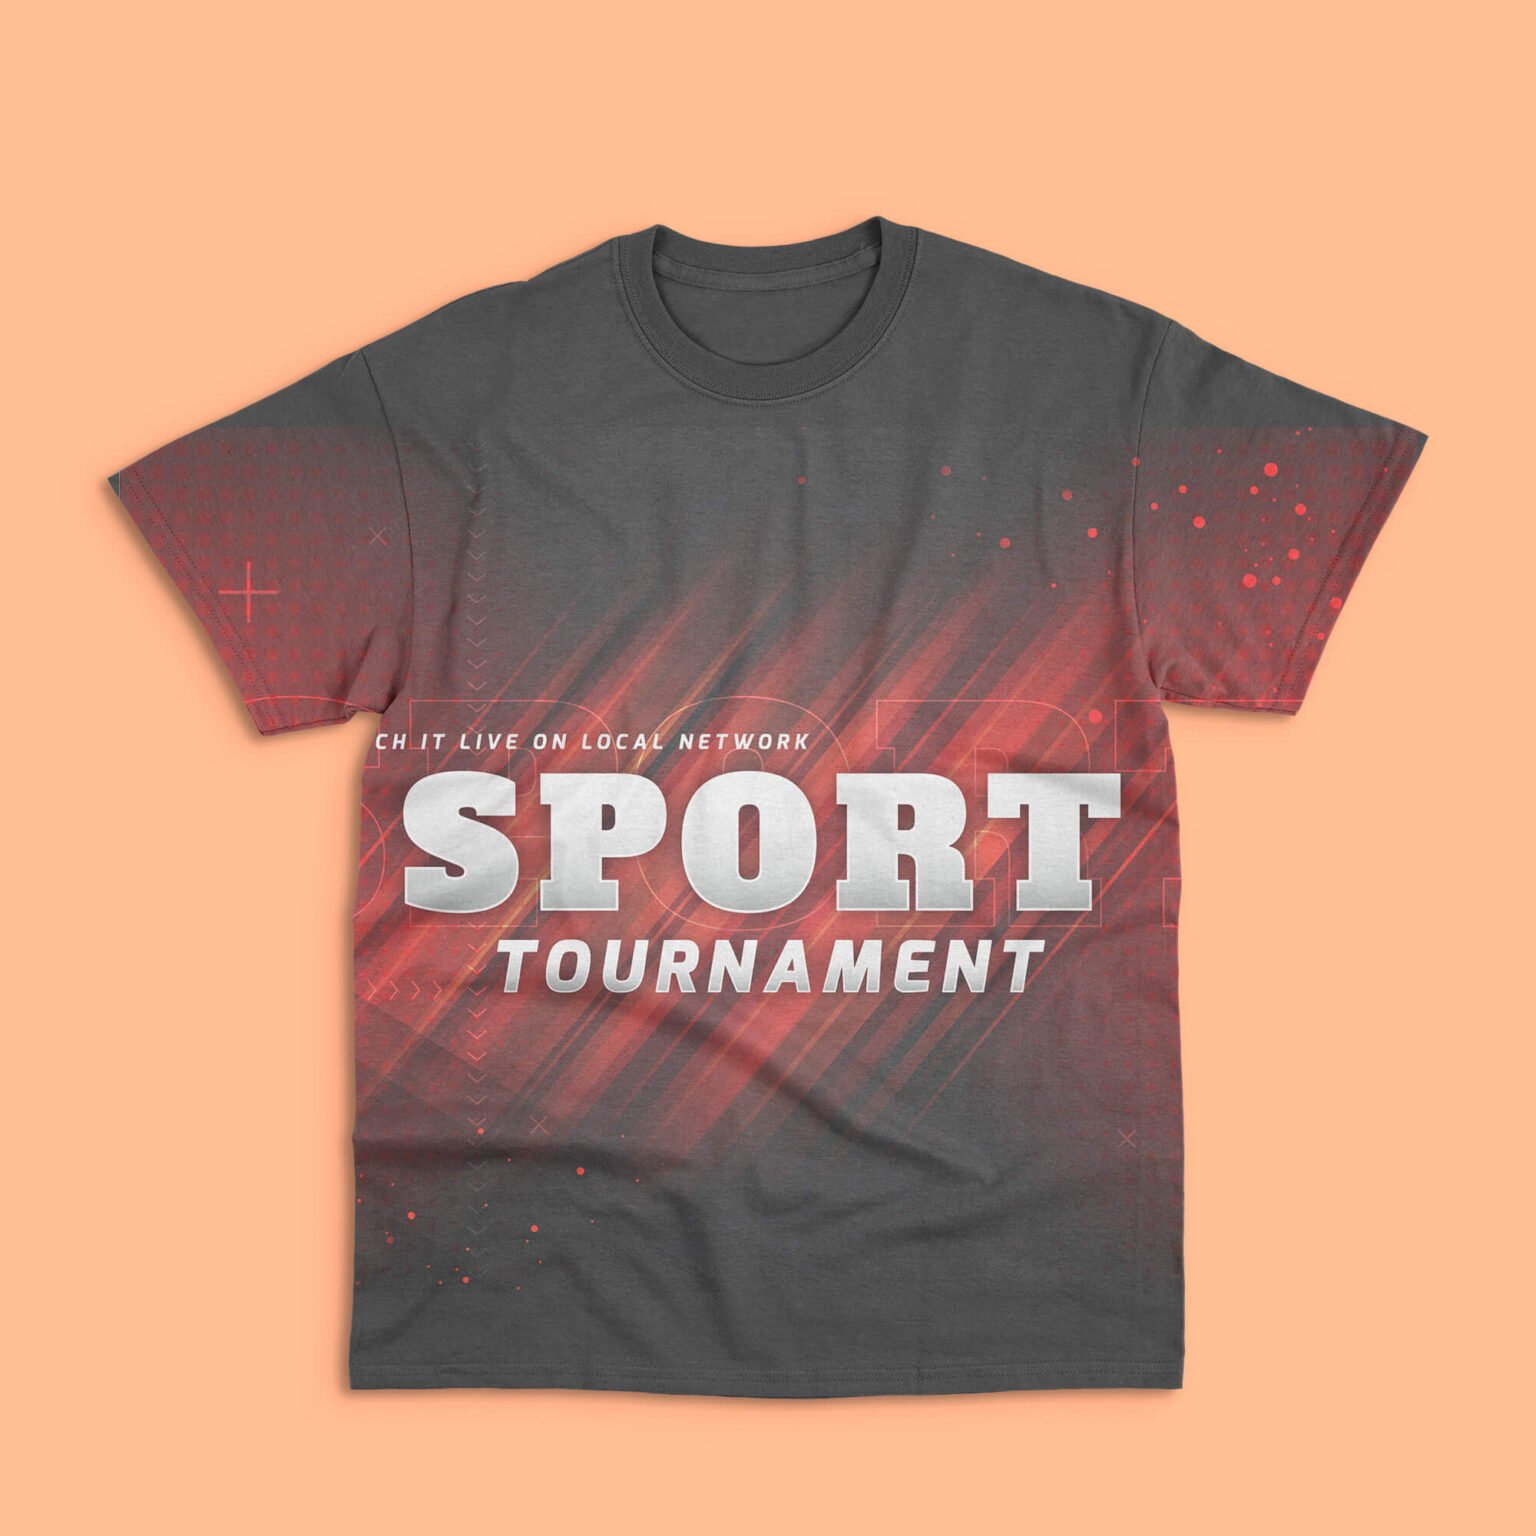 Free sports t shirt mockup psd Idea